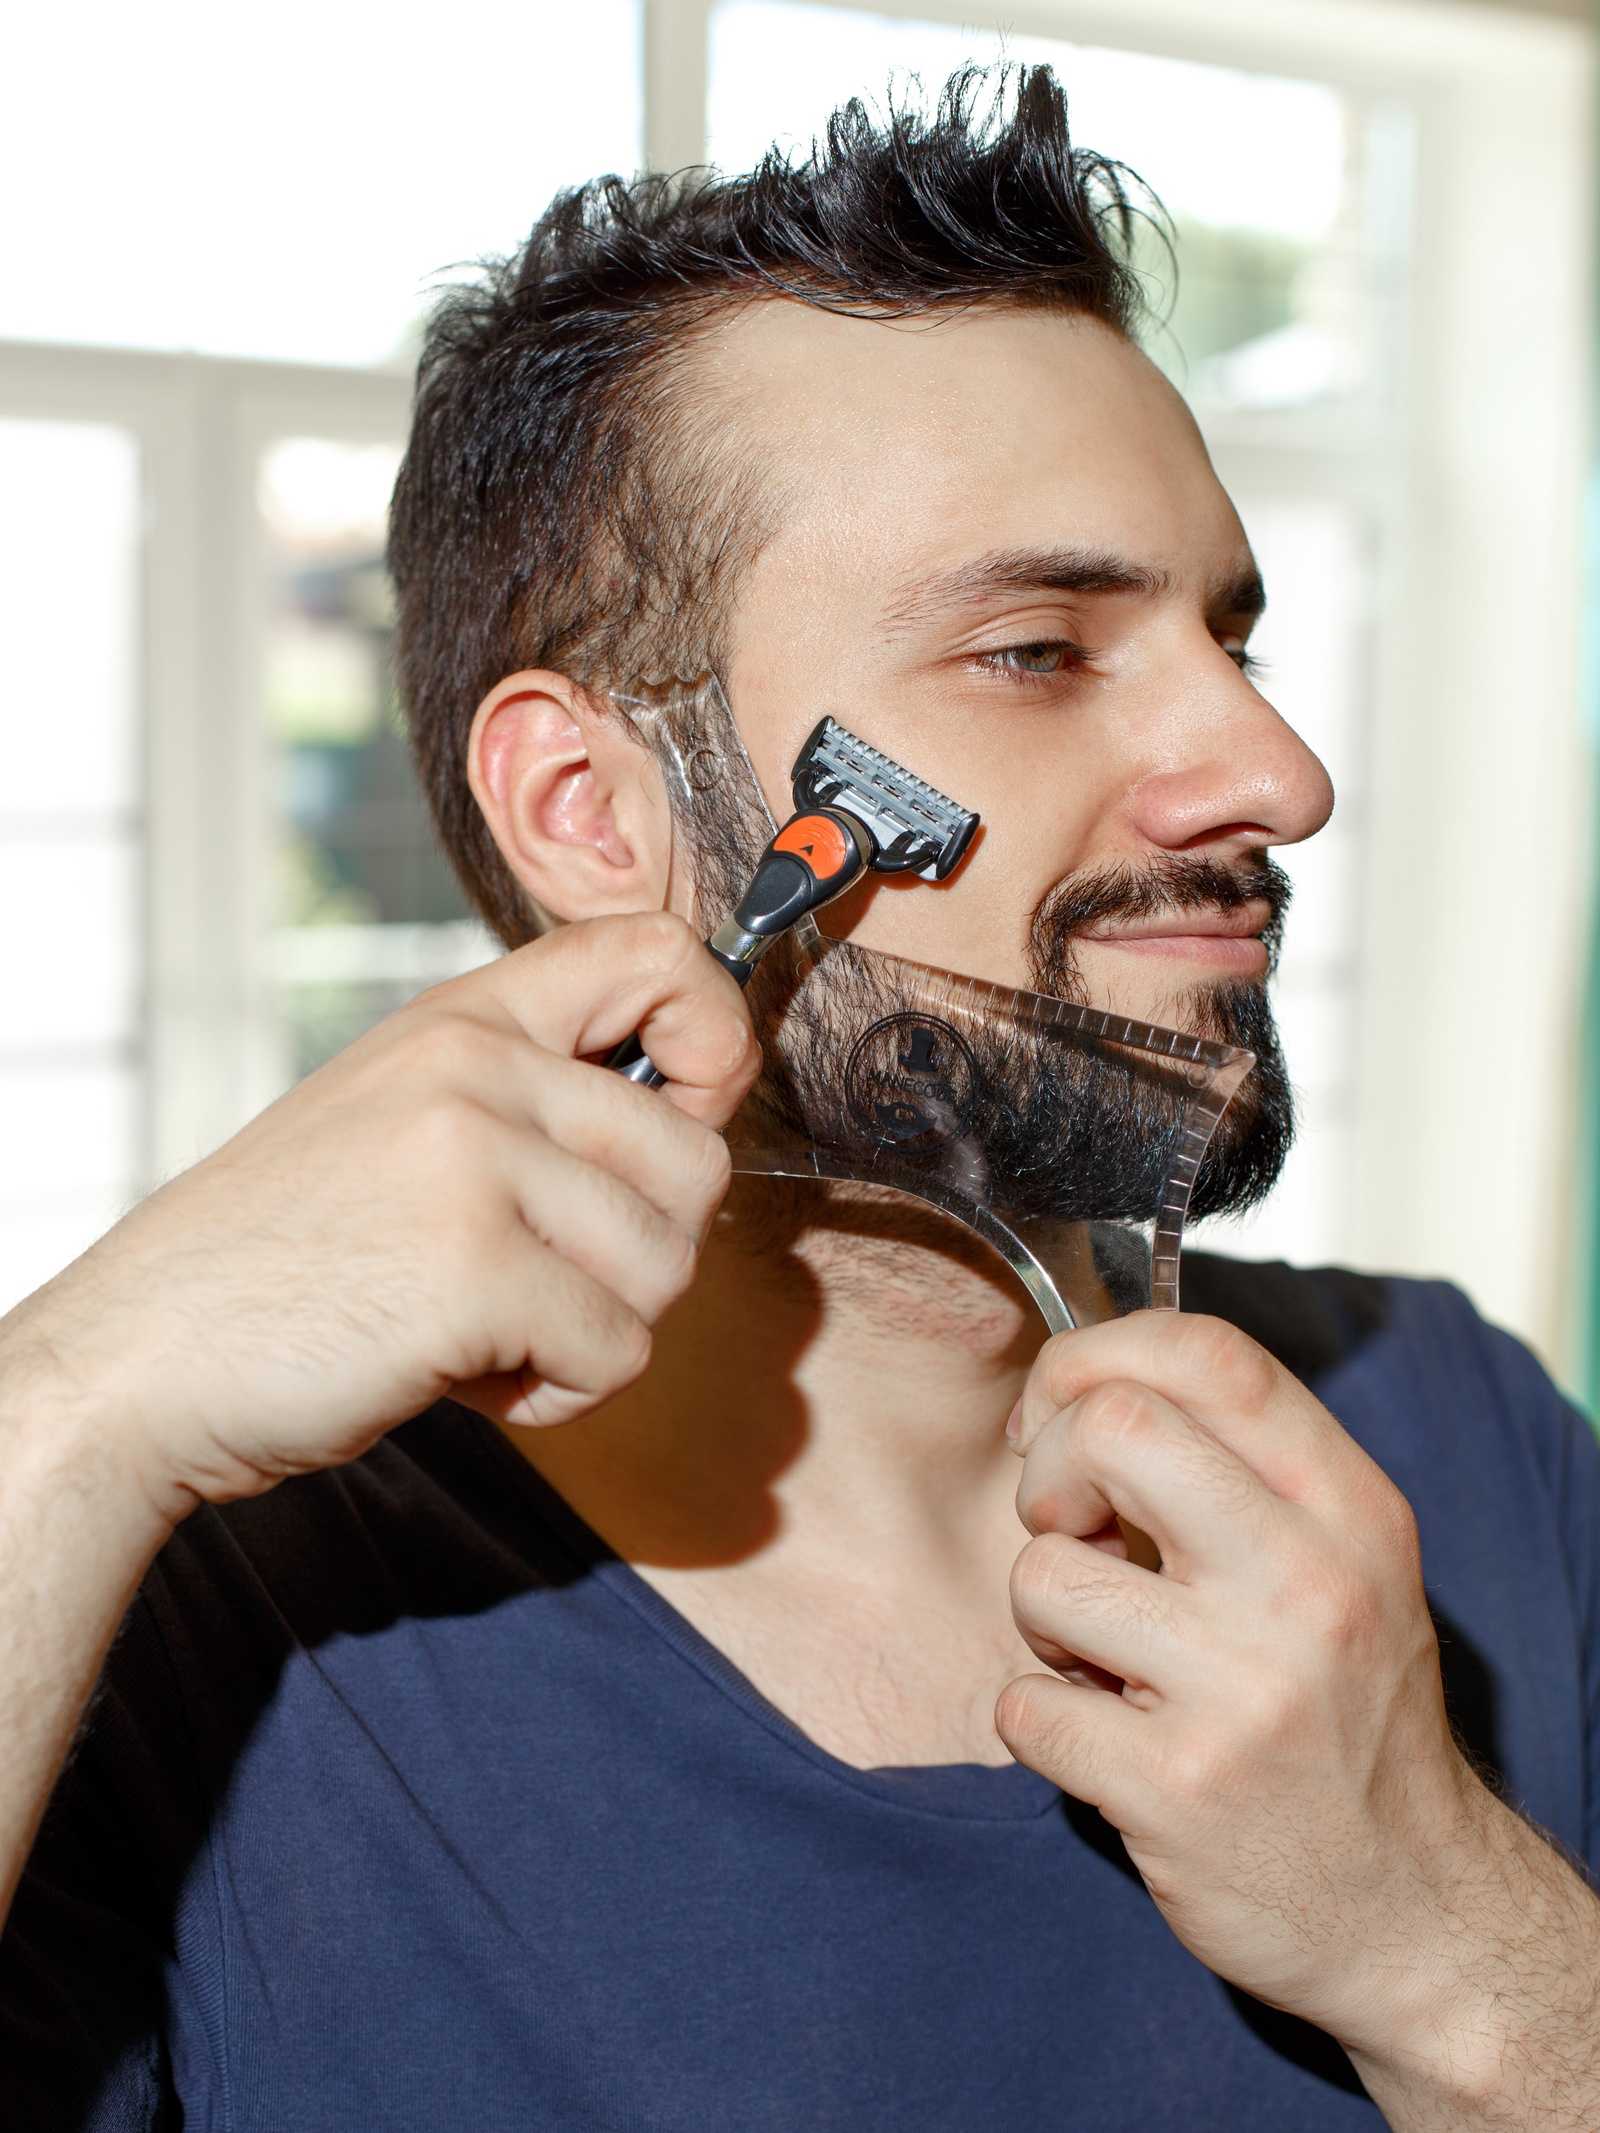 Как стричь бороду машинкой для волос — пошаговая инструкция